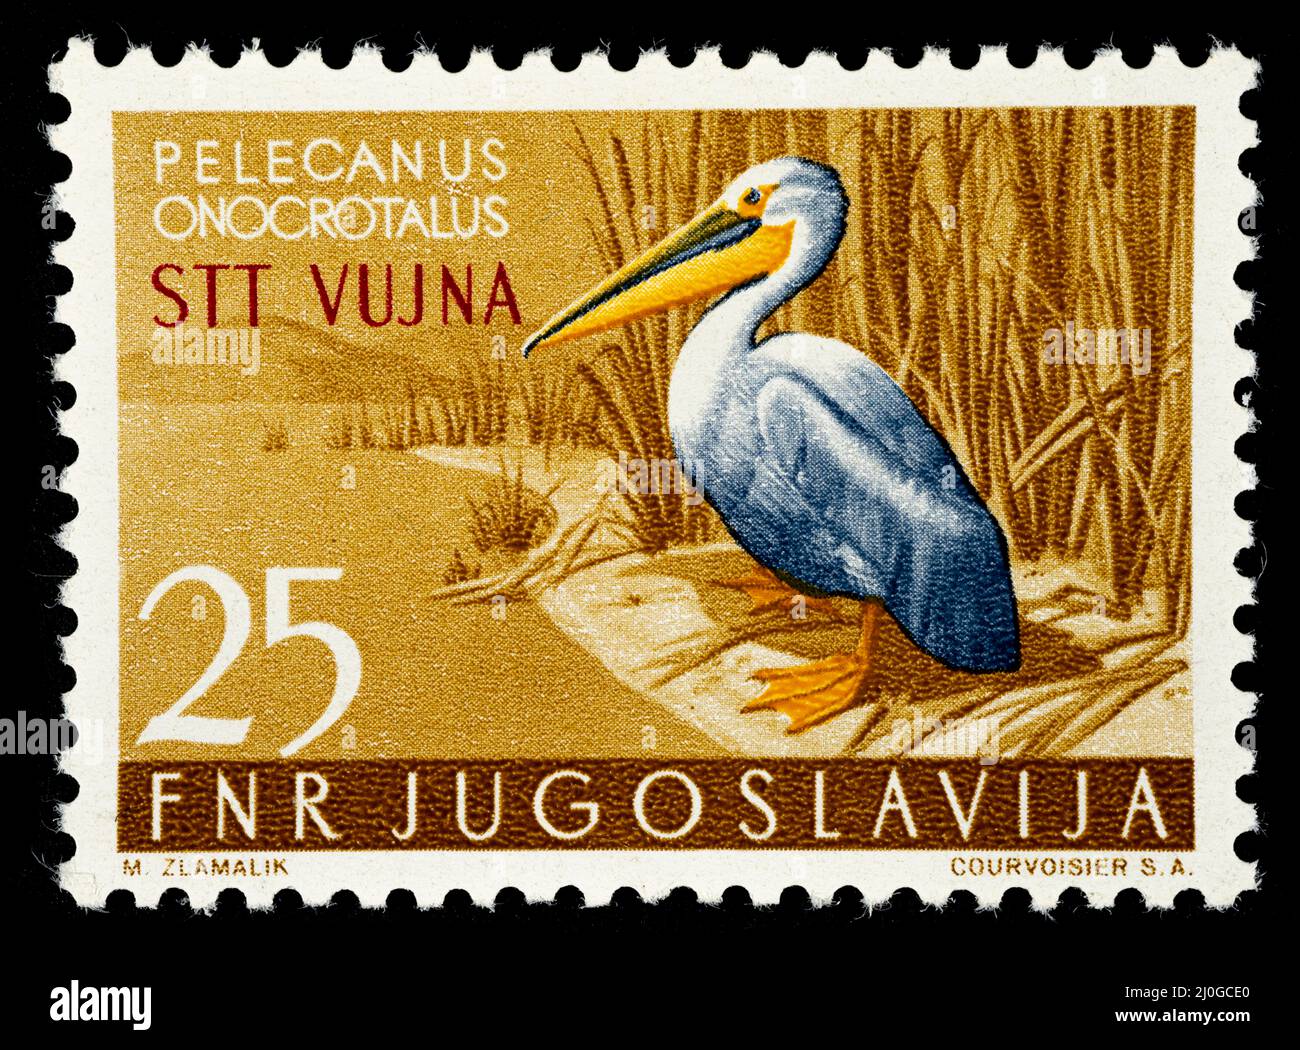 Gedenkmarke mit der Illustration eines Pelikans - Pelecanus Onocrotalus, herausgegeben vom ehemaligen Jugoslawien überdruckt STT VUJNA, frei ter Stockfoto